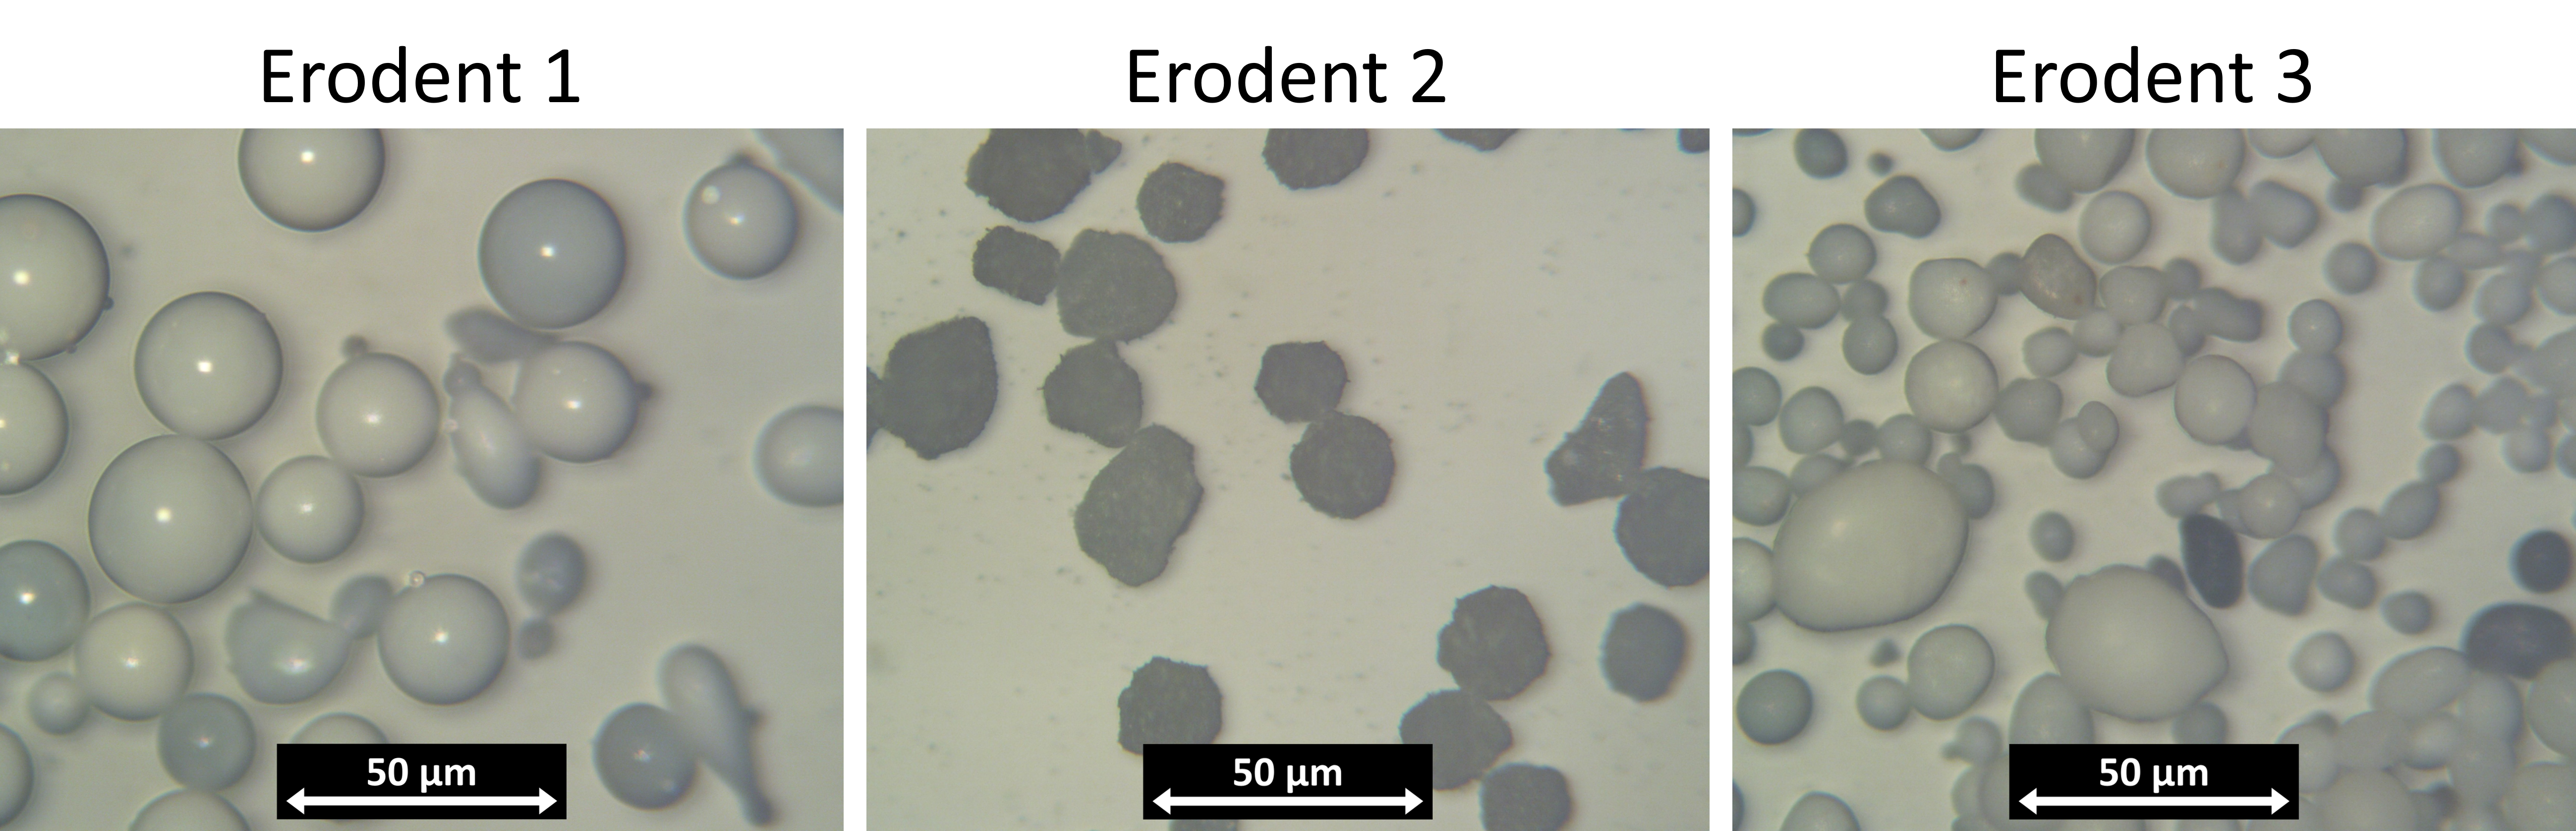 在G76测试中用作侵蚀剂的三种不同催化剂的显微镜图像